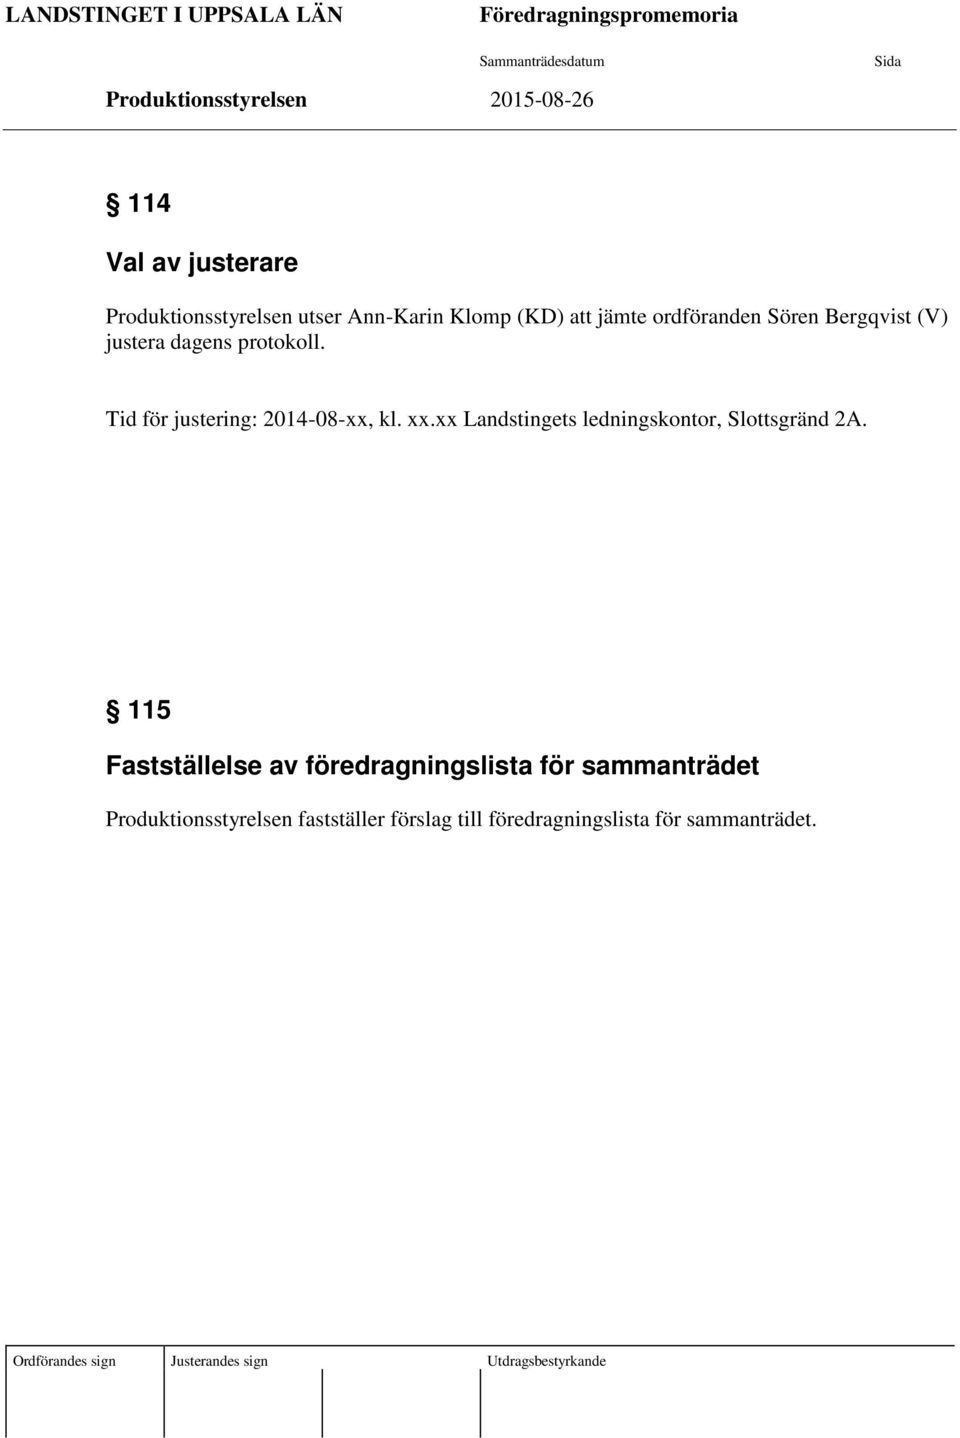 Tid för justering: 2014-08-xx, kl. xx.xx Landstingets ledningskontor, Slottsgränd 2A.